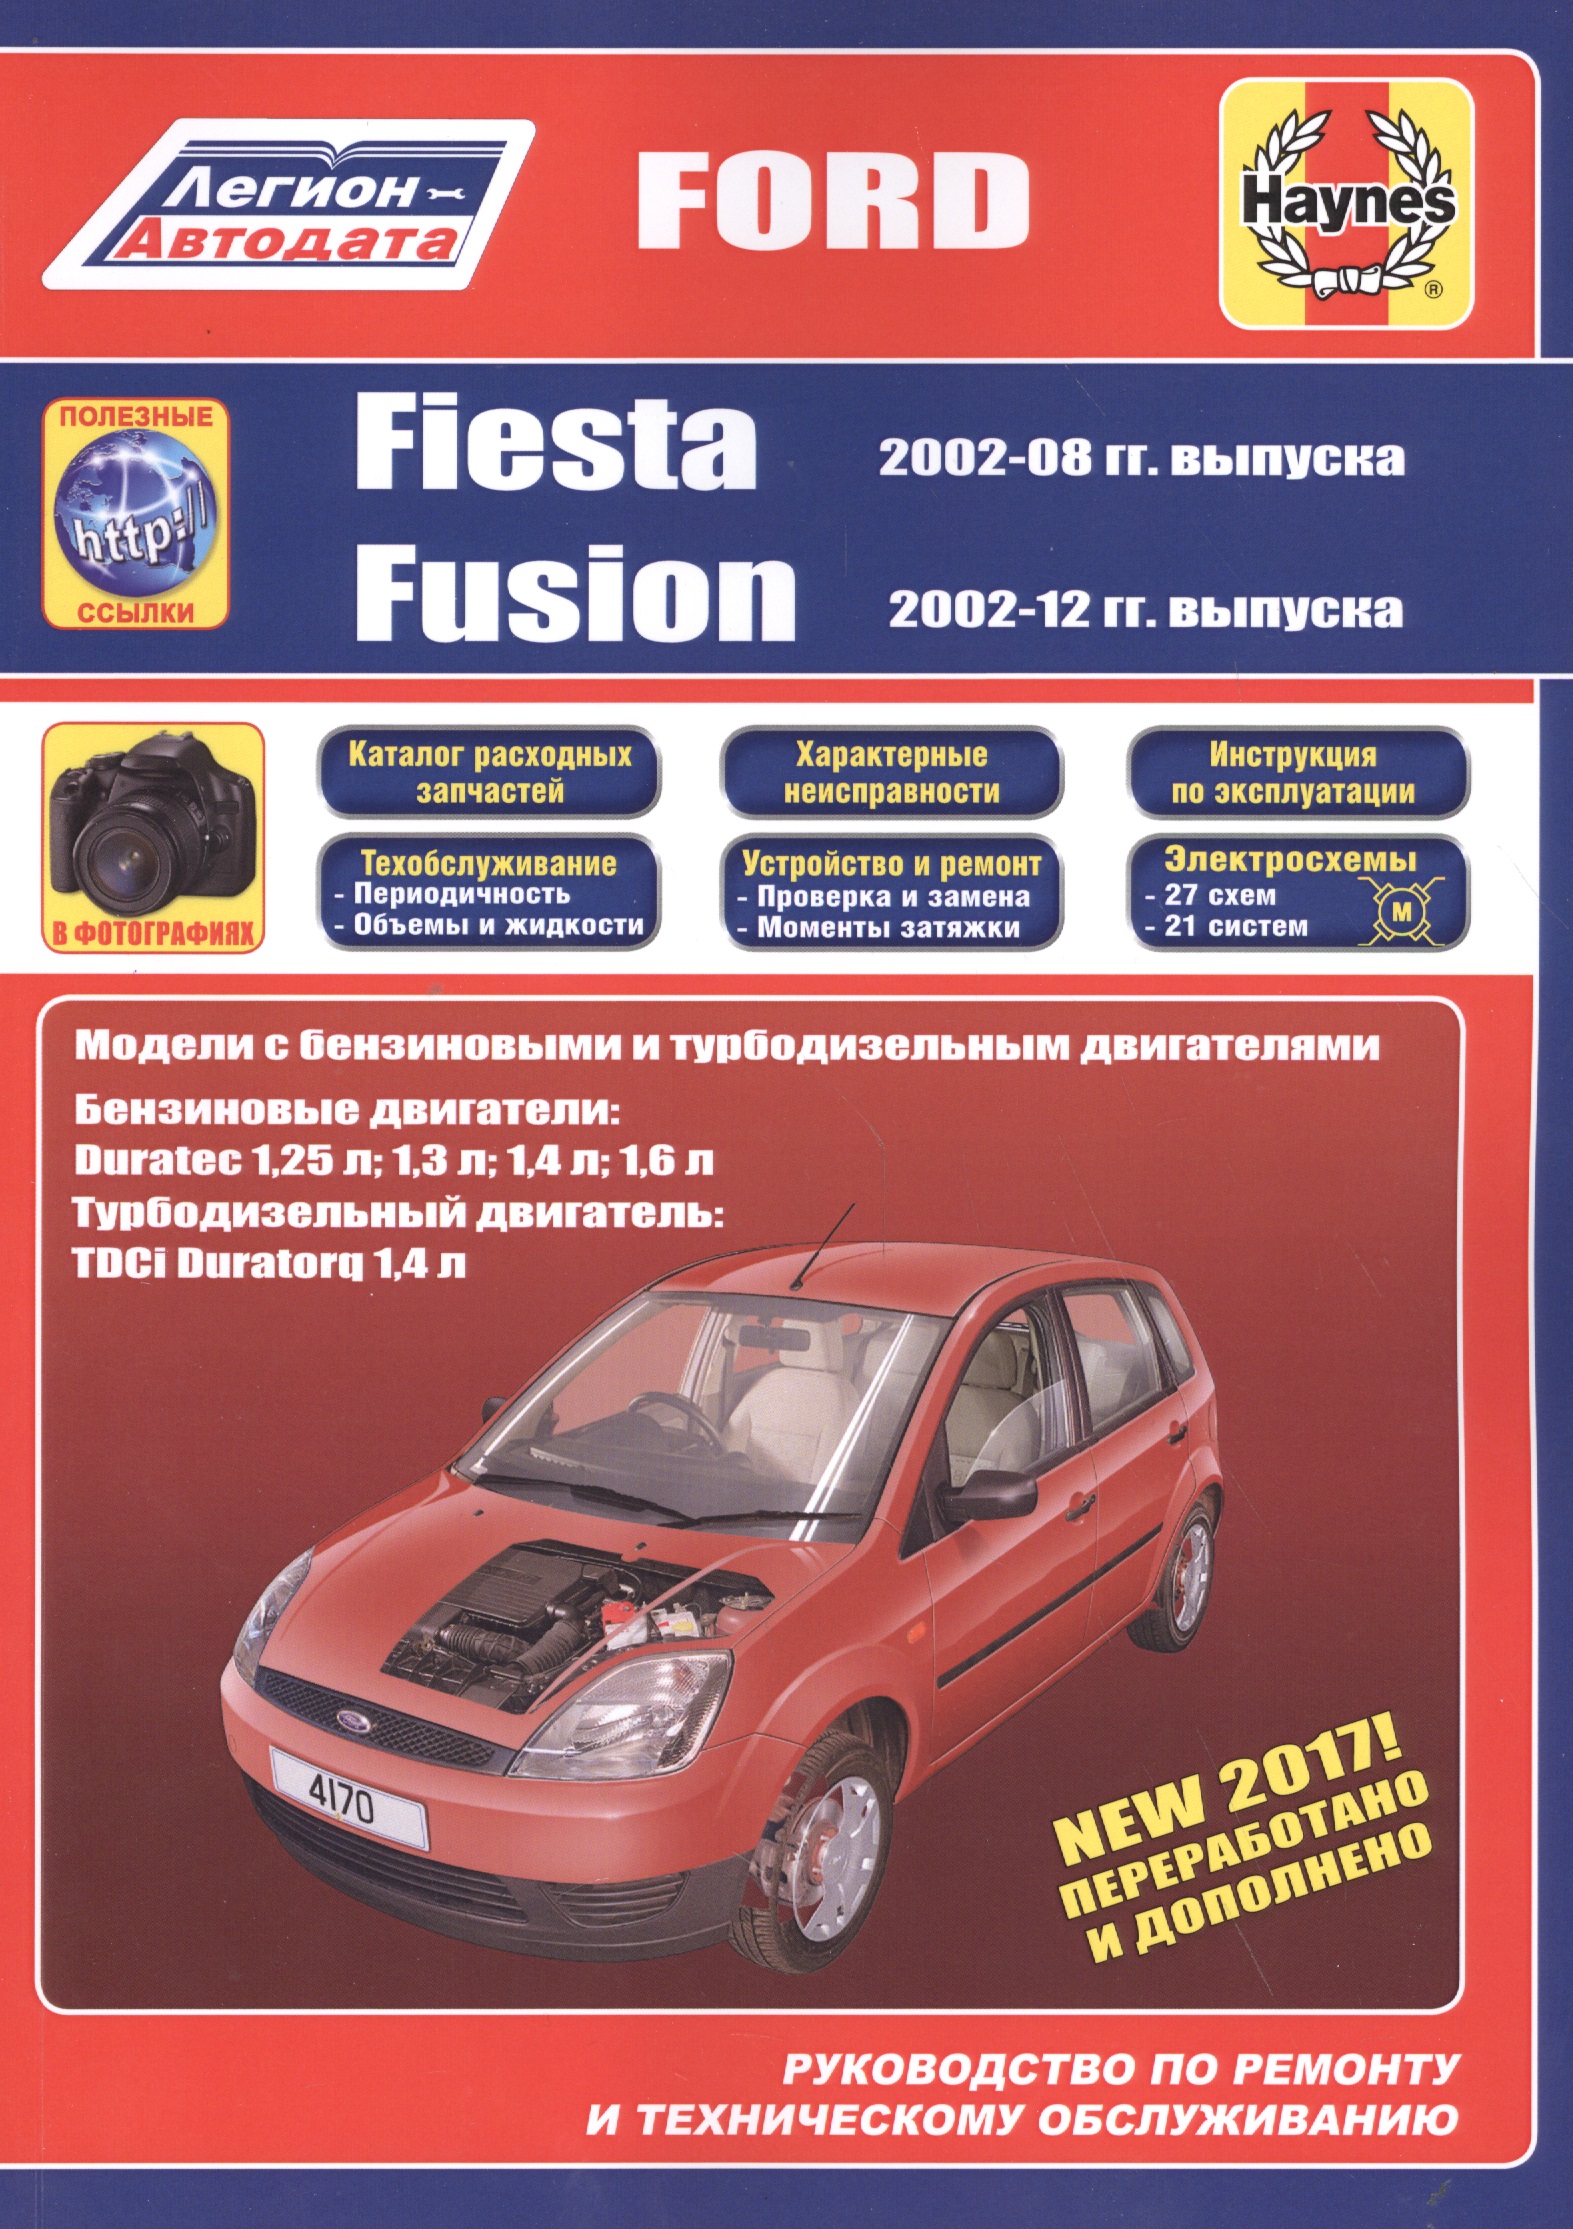 Ford Fiesta & Fusion 2002-08/12 бензин и дизель. Ремонт. Эксплуатация. ТО (ч/б фотографии+Каталог расходных з/ч, Характерные неисправности) tailgate lock motor actuator solenoid for ford fusion fiesta mk5 mk6 1481081 2s6t 432a98 af 1151275 2s6t 432a98 ae 1145288